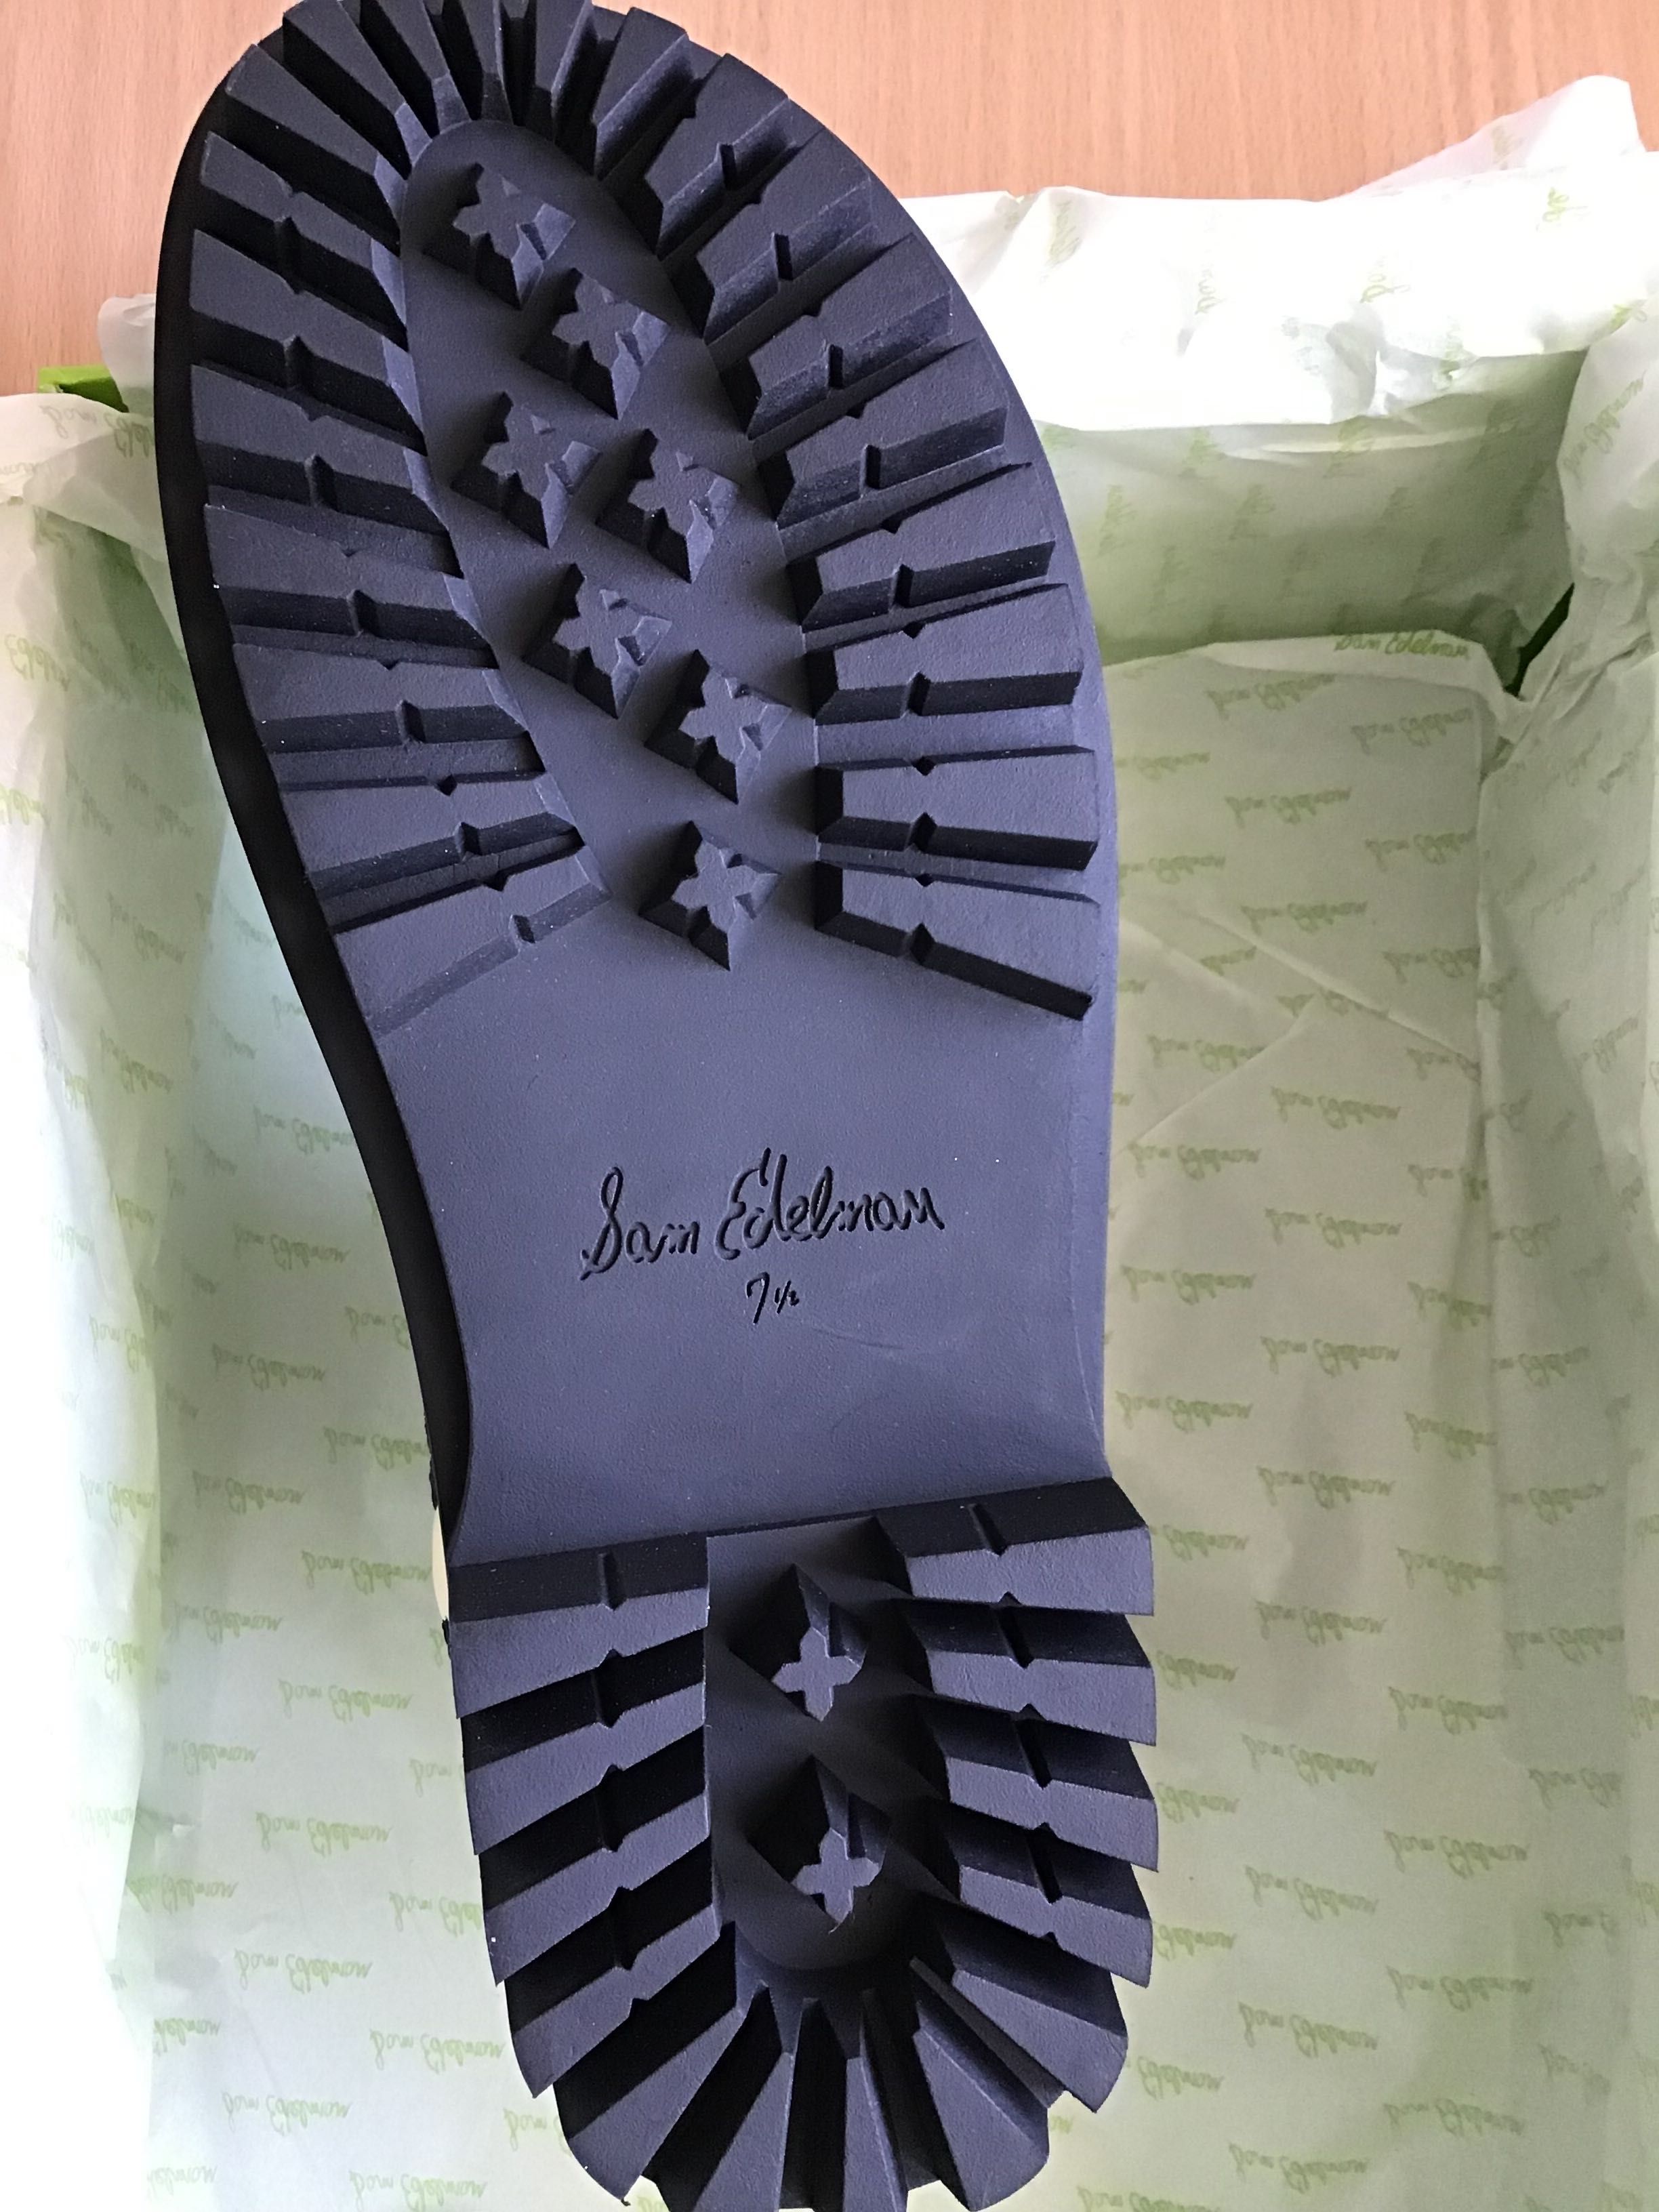 Сандали, босоніжкі, від бренду Sam Edelman, розмір 38-38,5.